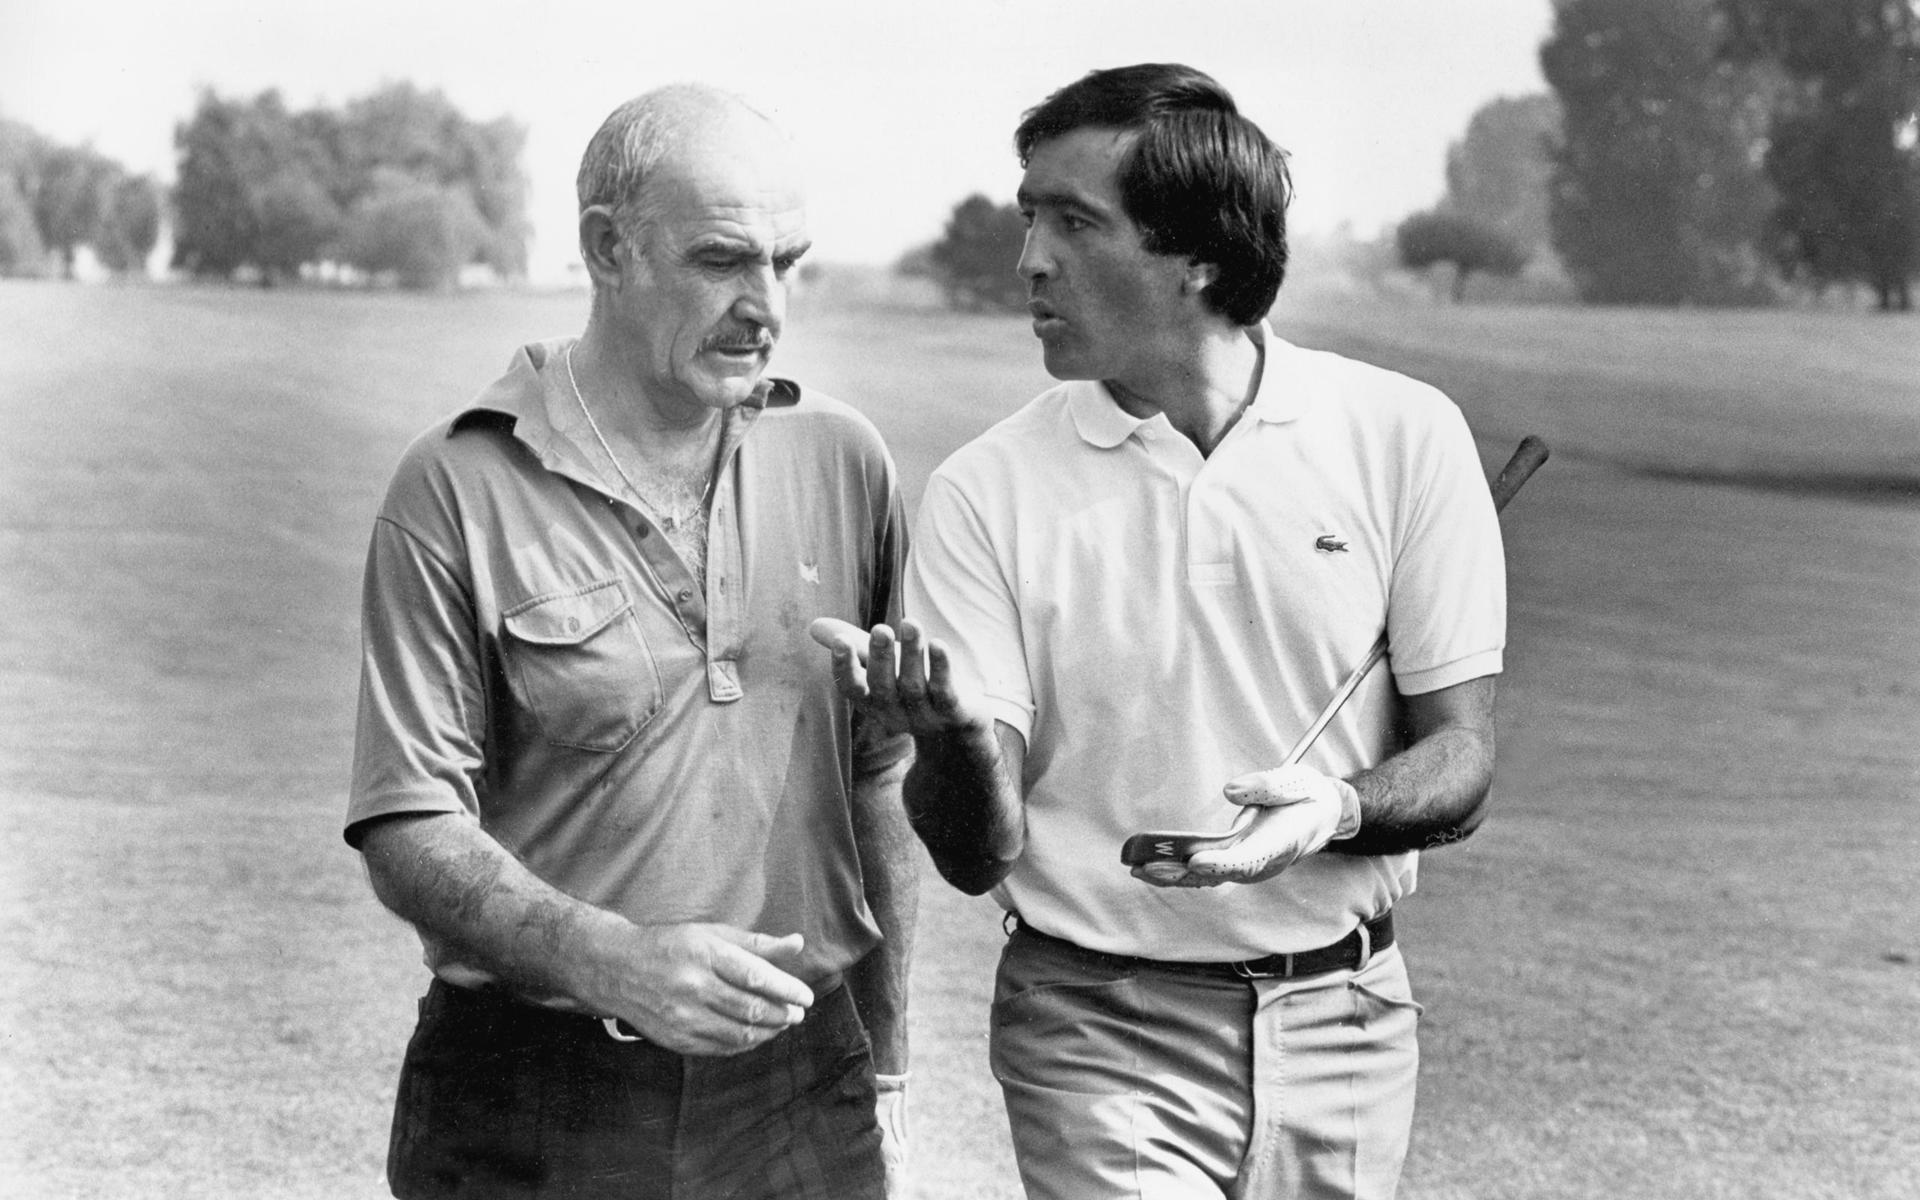 Spanska golfaren Severiano Ballesteros och Connery på en golfbana i Paris 1987. Efter att Connery gått i pension reste han runt och spelade golf i Karibien och Europa tillsammans med sin fru.